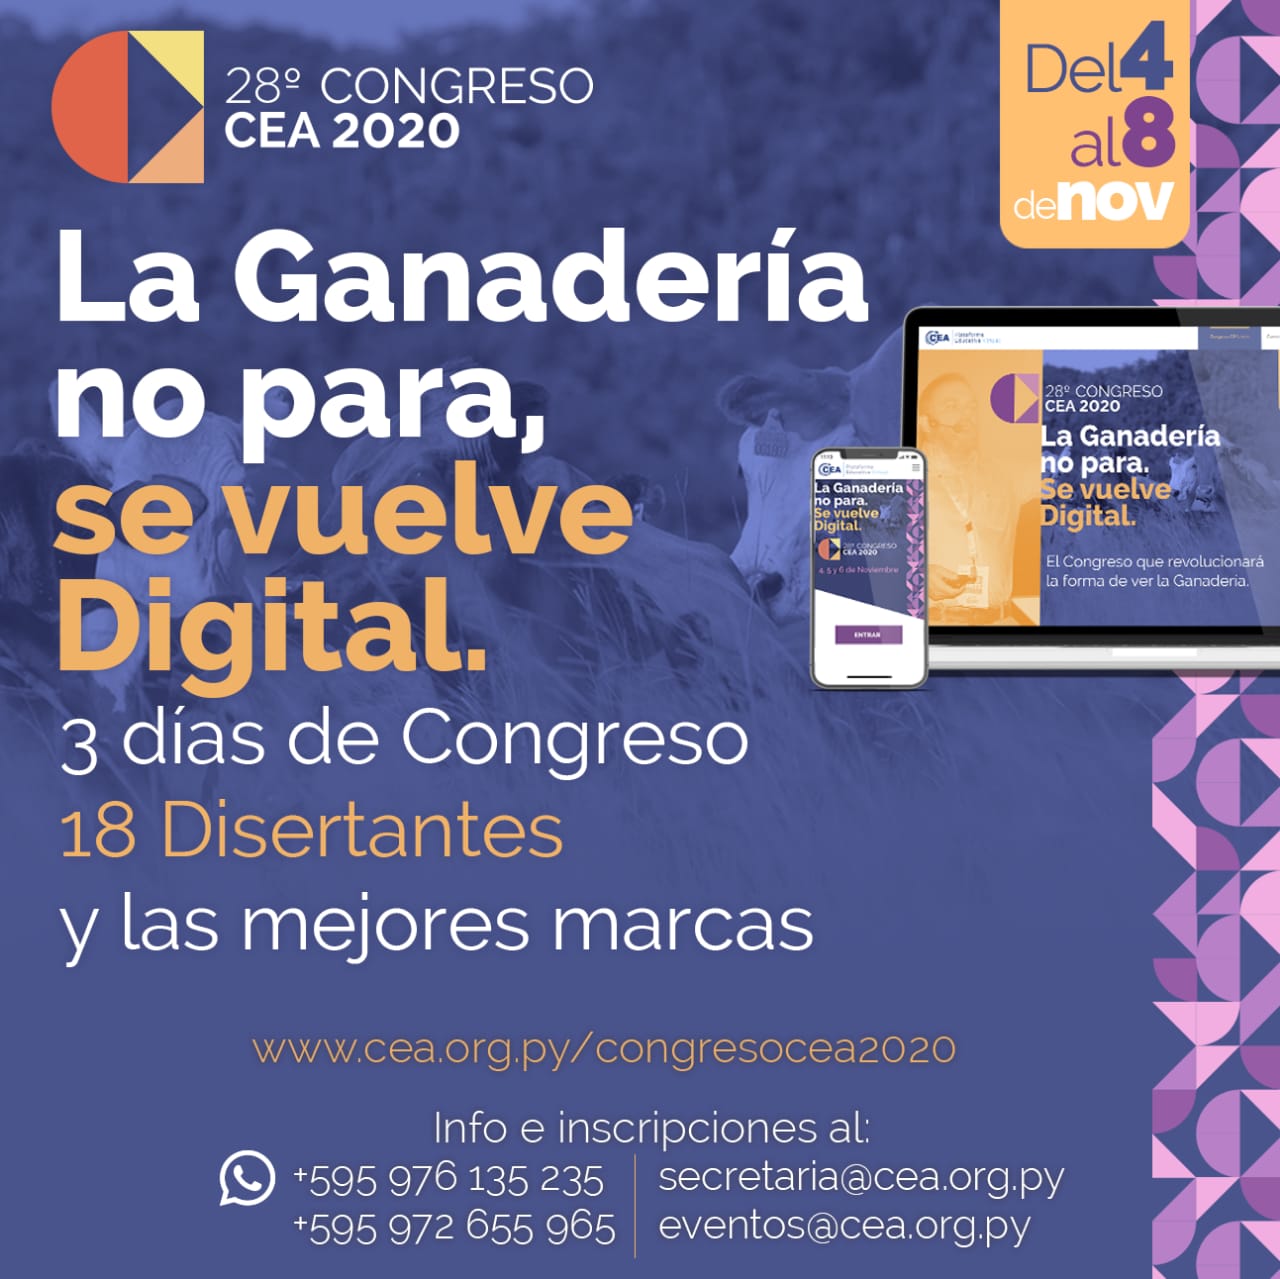 "La Ganadería no para, se vuelve digital". Fuente: Congreso CEA